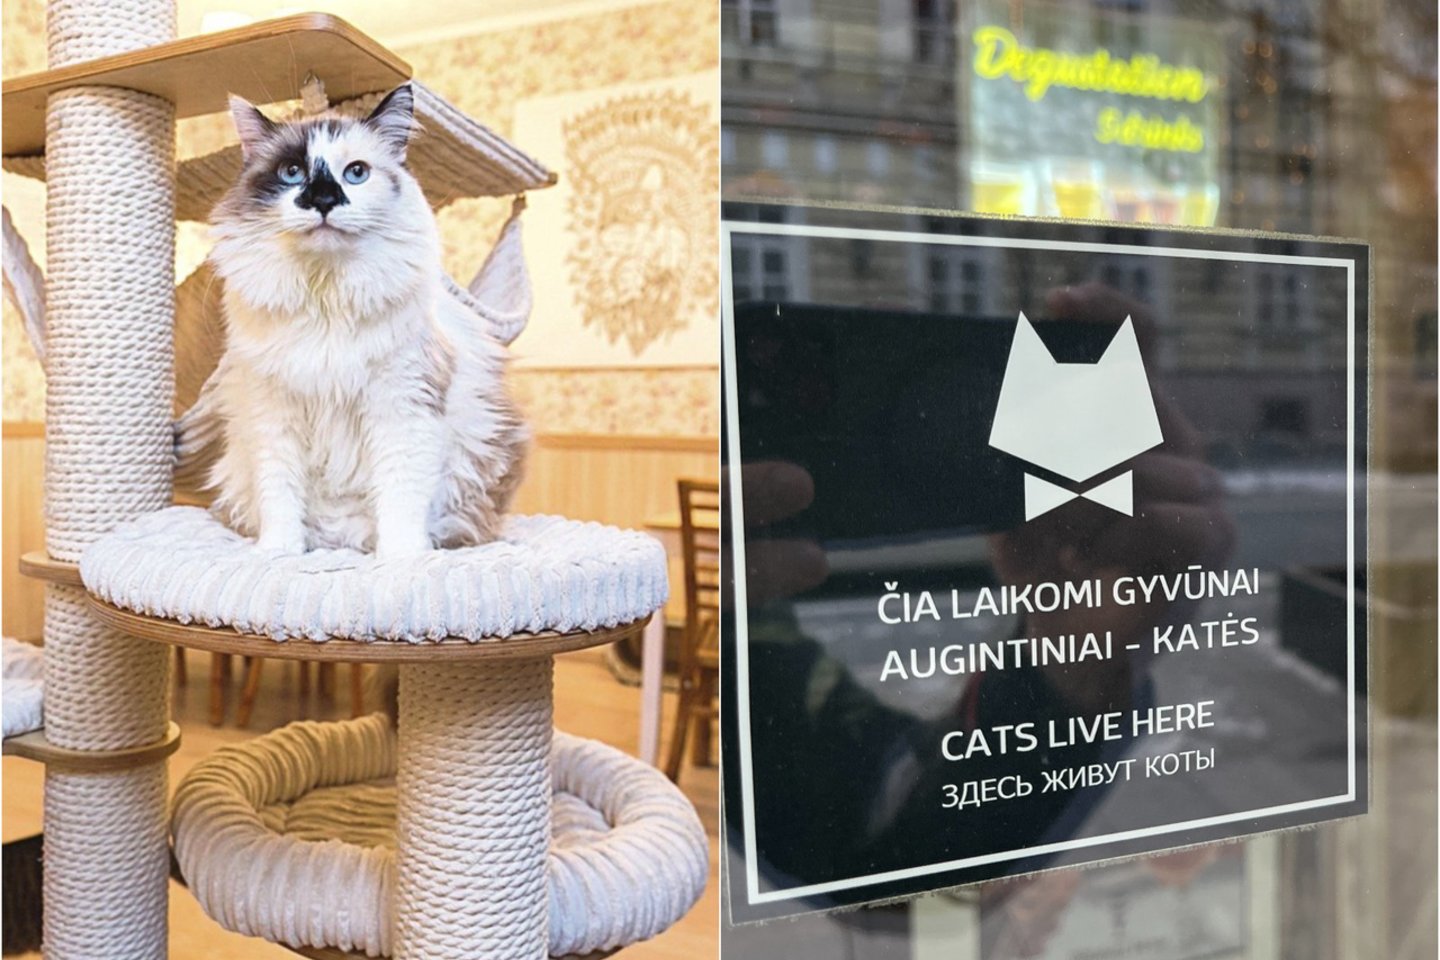  Kačių kavinės atstovai primena apie galiojančias taisykles.<br> T. Bauro ir kačių kavinės atstovų nuotr.